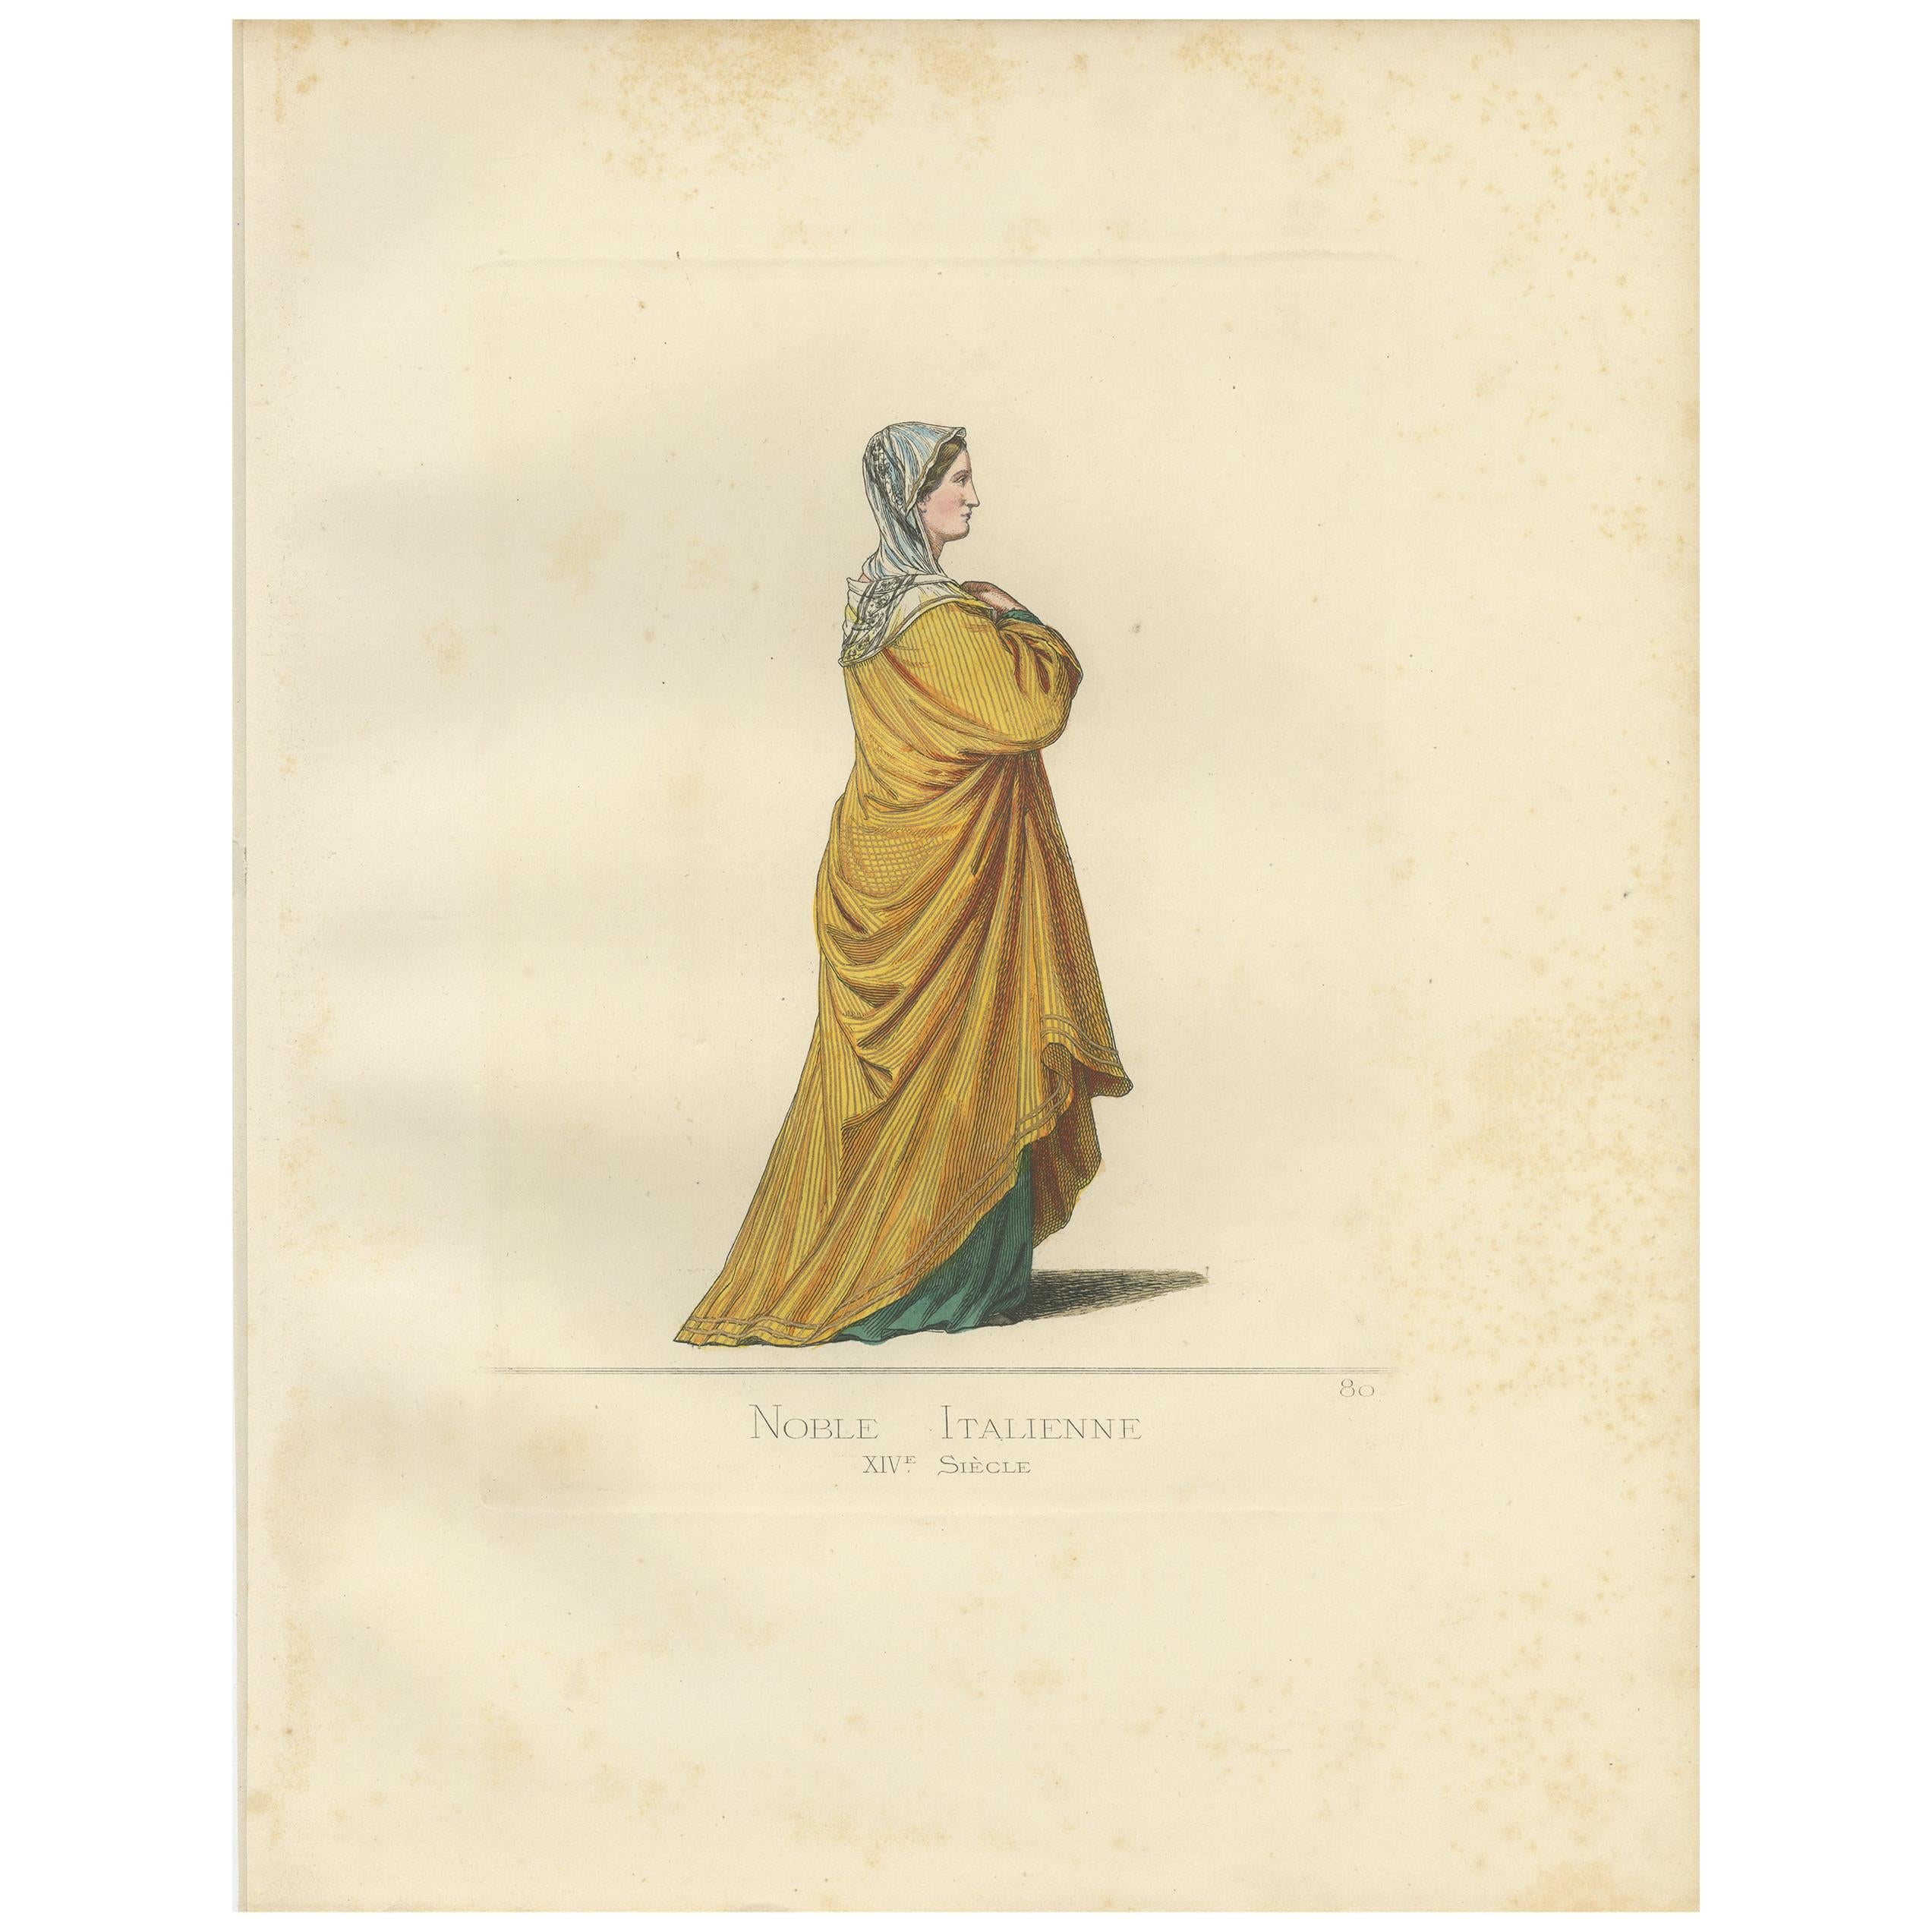 Impression ancienne d'une noble italienne du 14e siècle par Bonnard, 1860